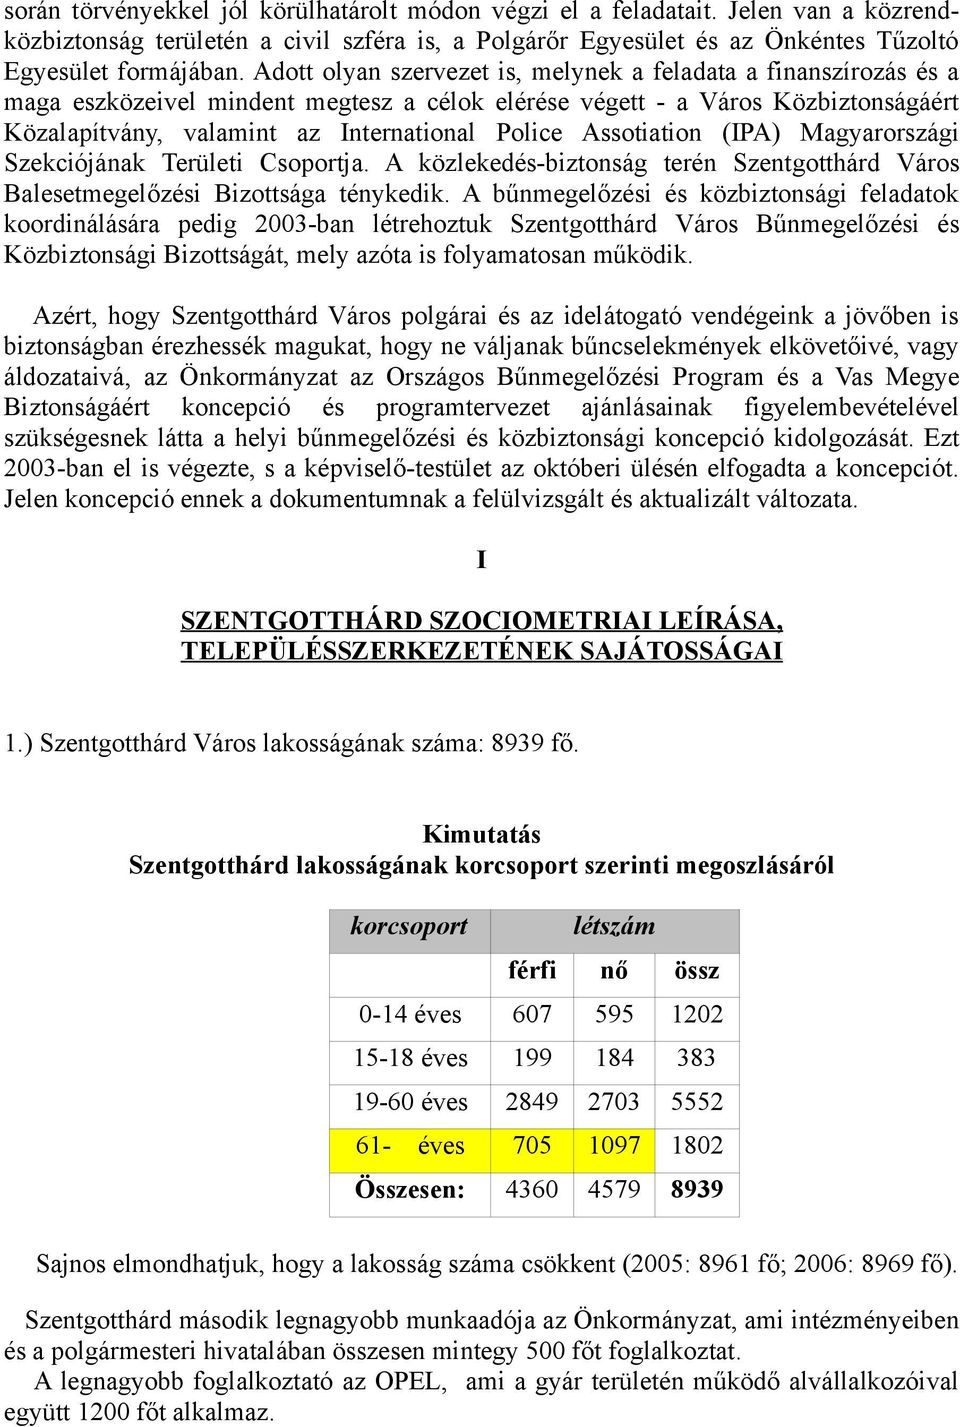 Assotiation (IPA) Magyarországi Szekciójának Területi Csoportja. A közlekedés-biztonság terén Szentgotthárd Város Balesetmegelőzési Bizottsága ténykedik.